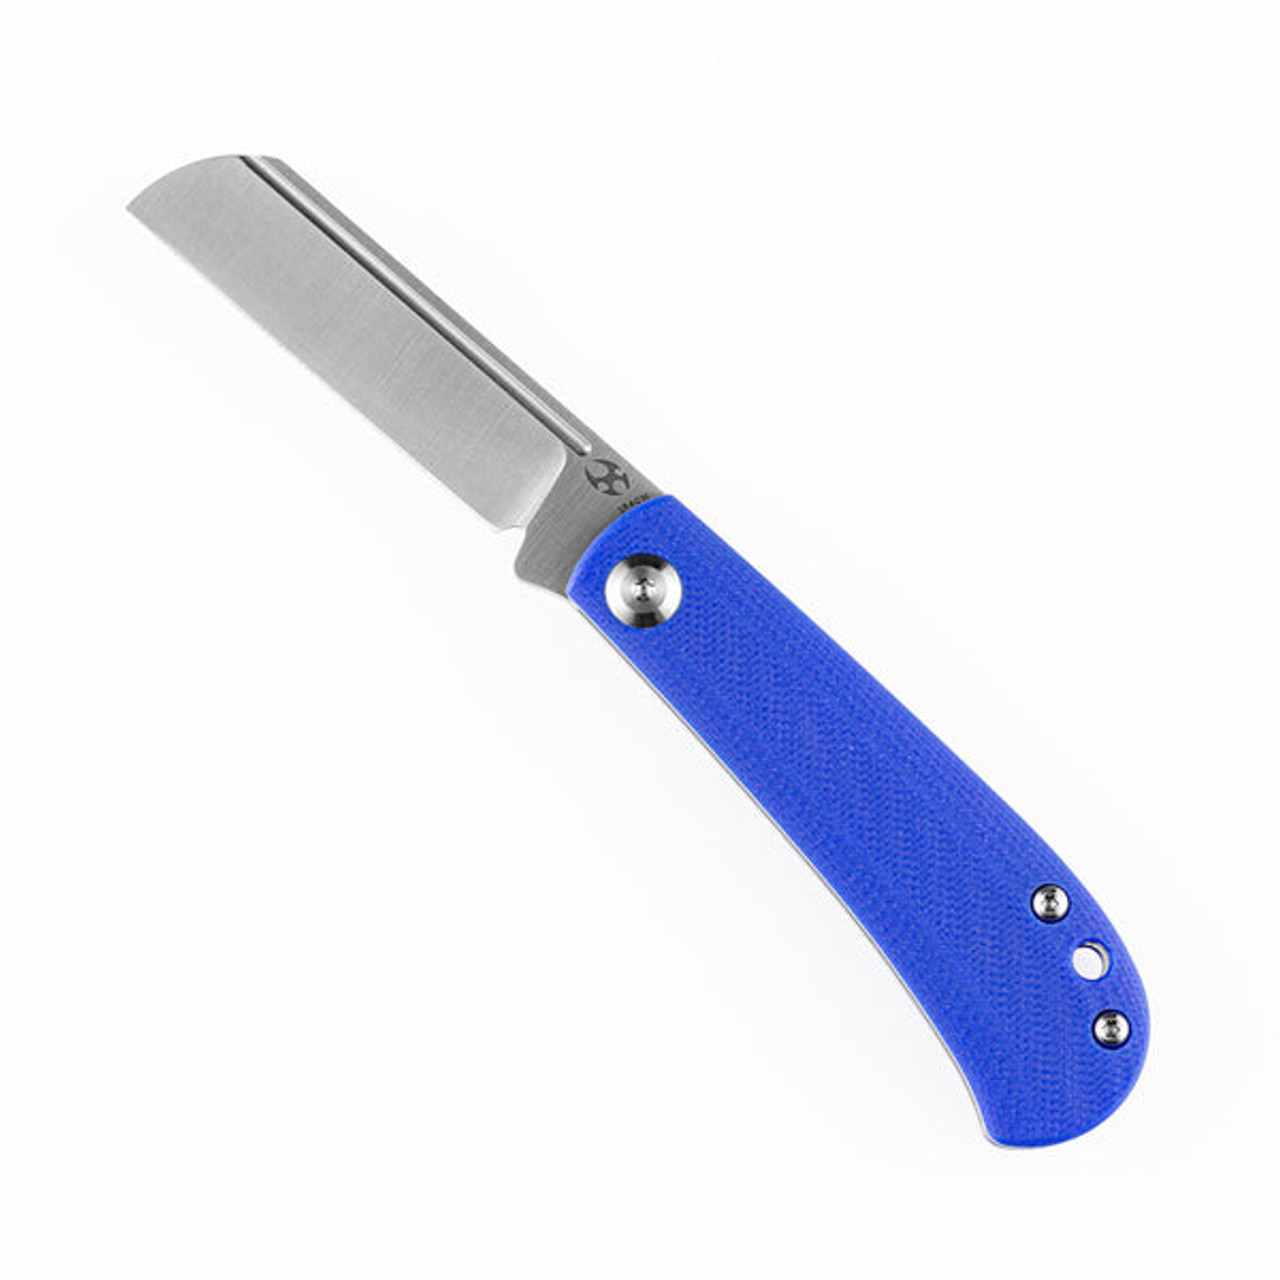 Kansept Knives Bevy Slip Joint (T2026F5) 2.9" Satin 154CM Sheepsfoot Plain Blade, Blue G-10 Handle